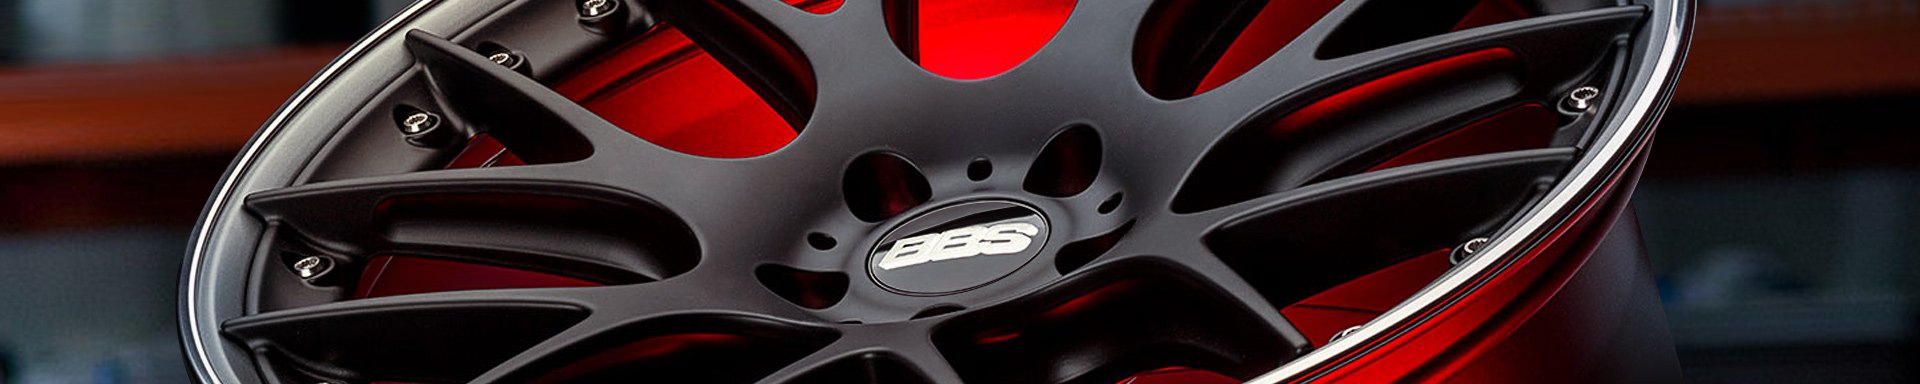 20 Inch BBS Wheels & Rims — CARiD.com